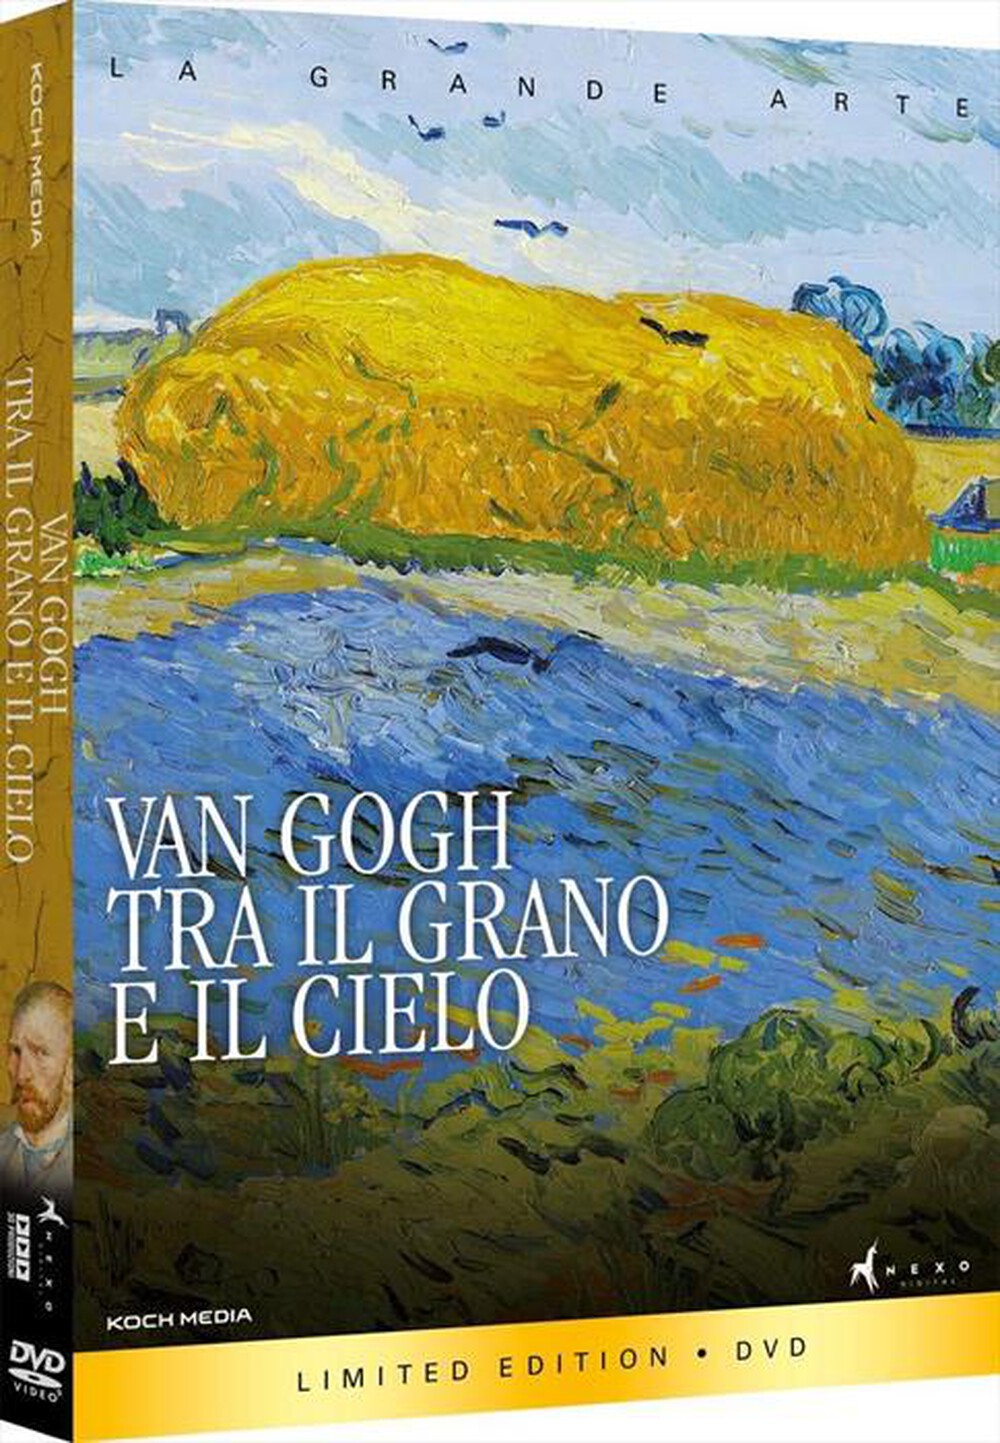 "Nexo Digital - Van Gogh - Tra Il Grano E Il Cielo"